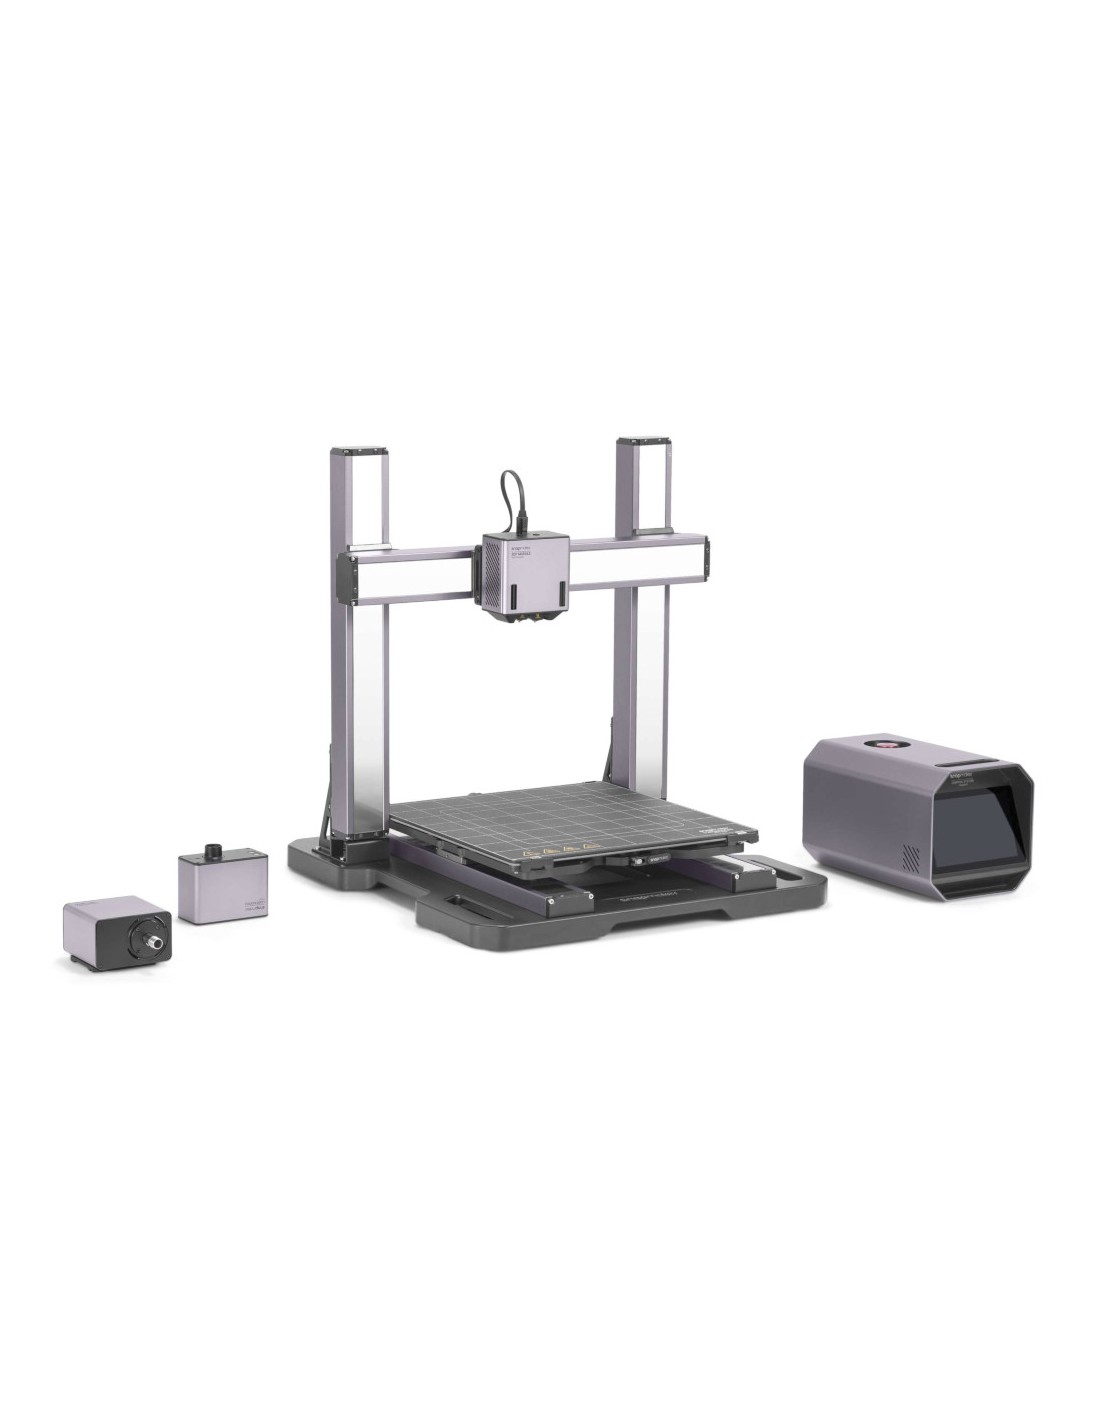 Snapmaker Artisan 3-en-1 - Imprimante 3D, routeur CNC, machine à graver et à découper au laser 40W